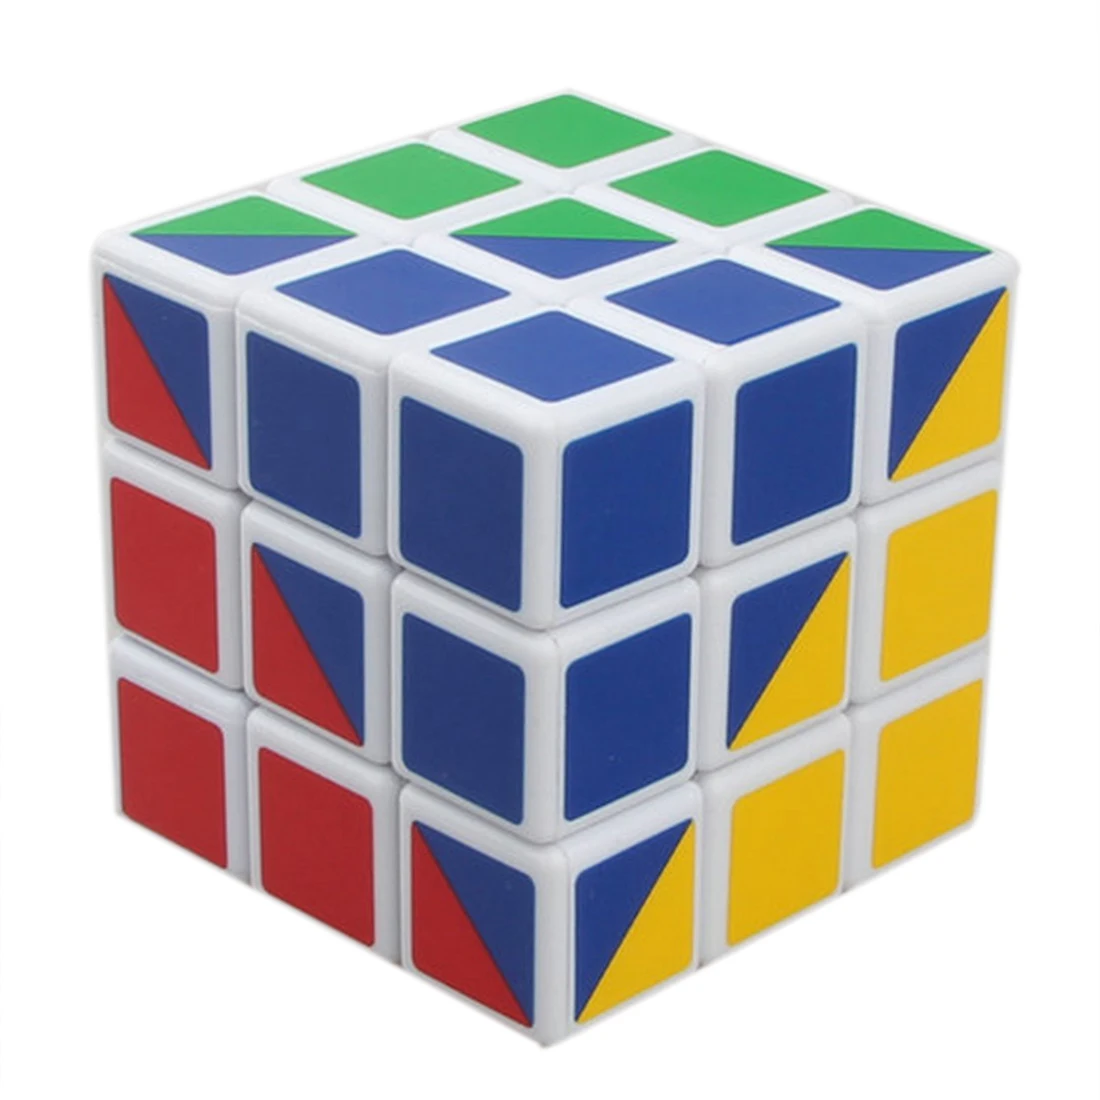 X-cube самый сложный 3X3X3 56 мм магический скоростной куб четыре цвета магический куб